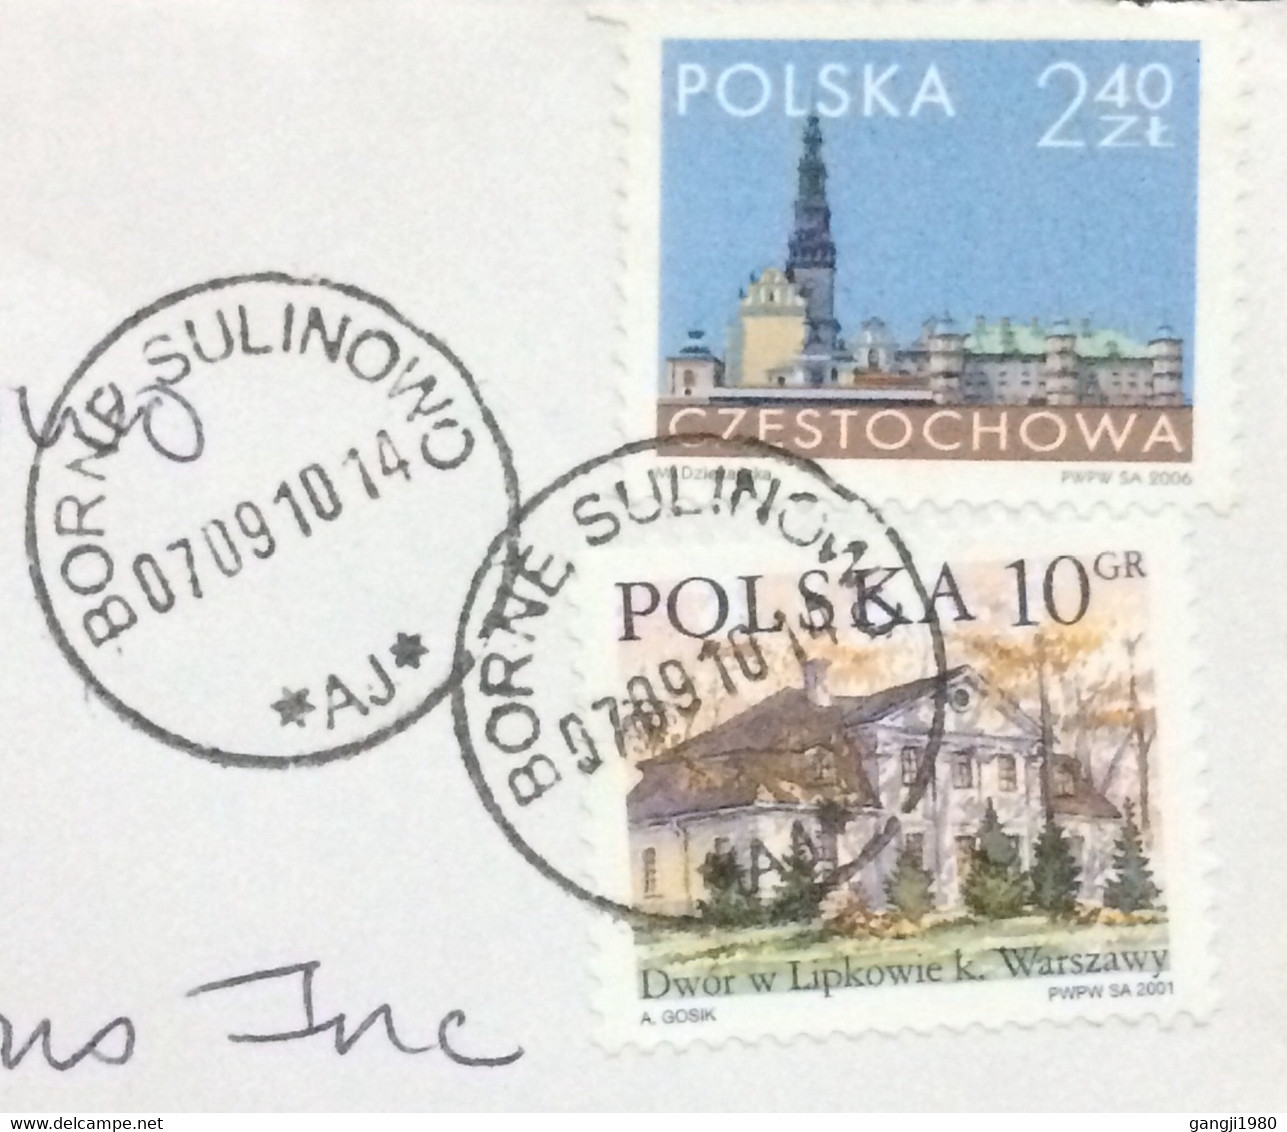 POLAND 2010, COVER USED TO USA, STAMP CITY VIEW CZĘSTOCHOWA & DWOR W LIPKOWIE, VILLAGE BORNE SULINOWO CANCEL. - Lettres & Documents